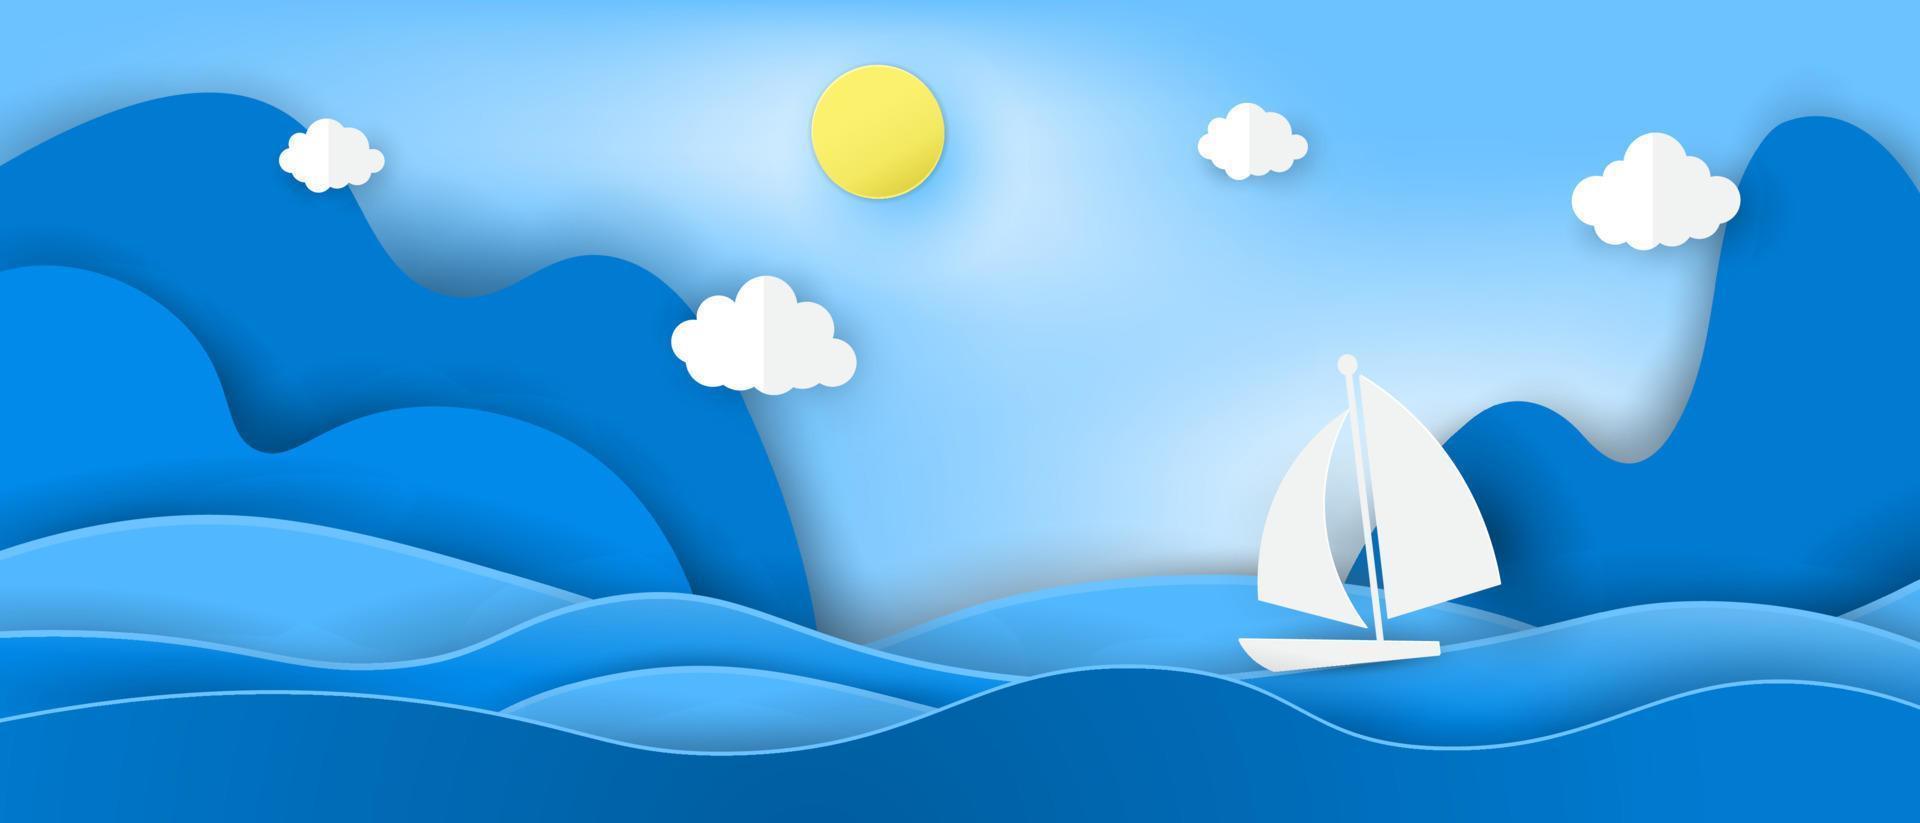 barco de origami flotando en el mar azul. vector